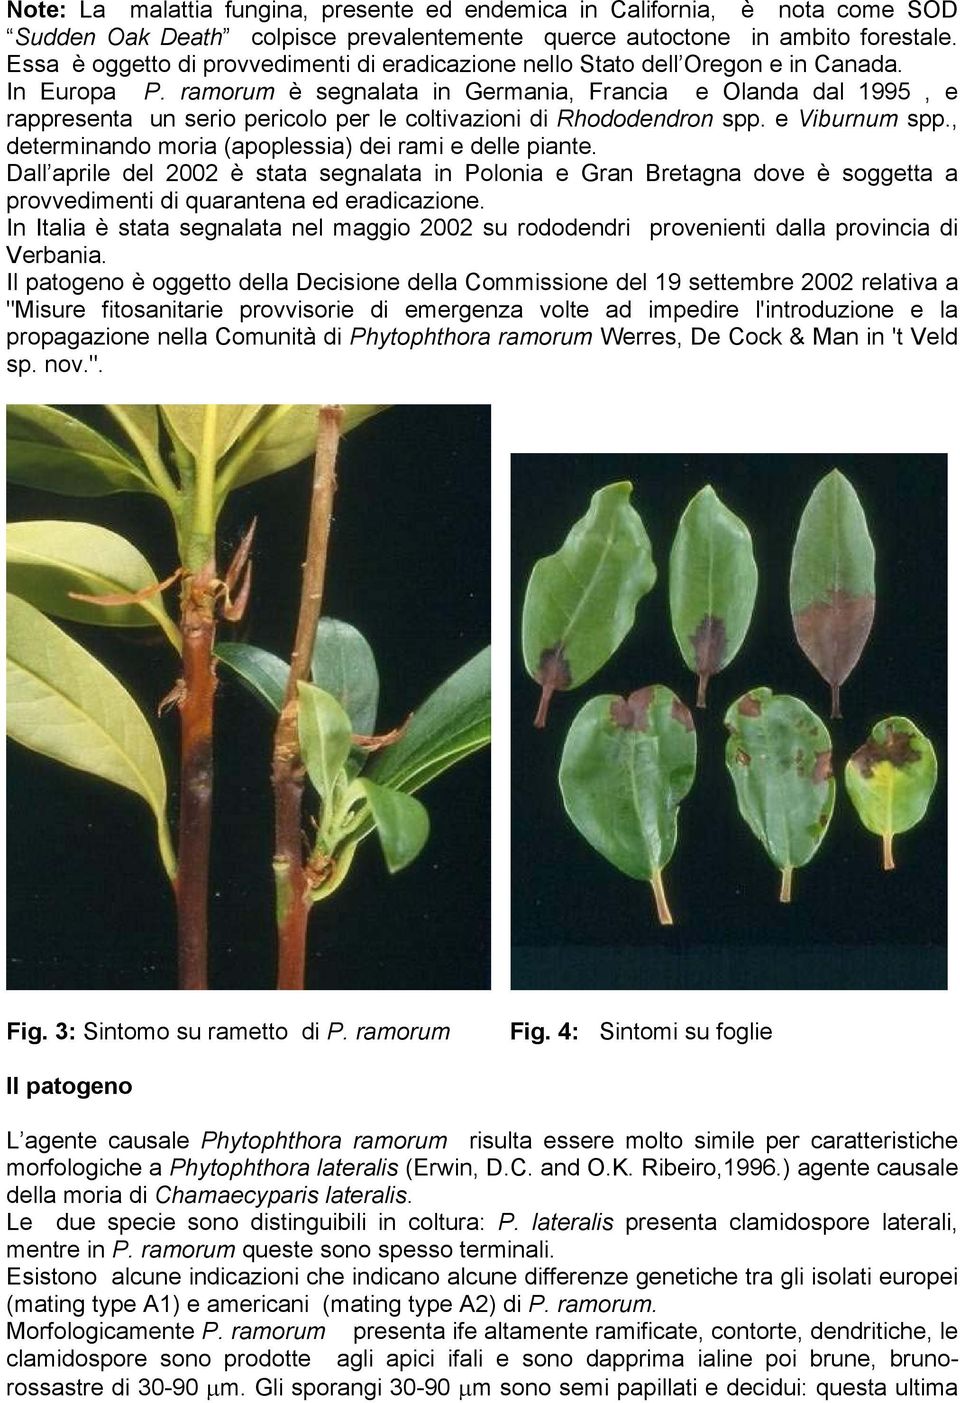 ramorum è segnalata in Germania, Francia e Olanda dal 1995, e rappresenta un serio pericolo per le coltivazioni di Rhododendron spp. e Viburnum spp.